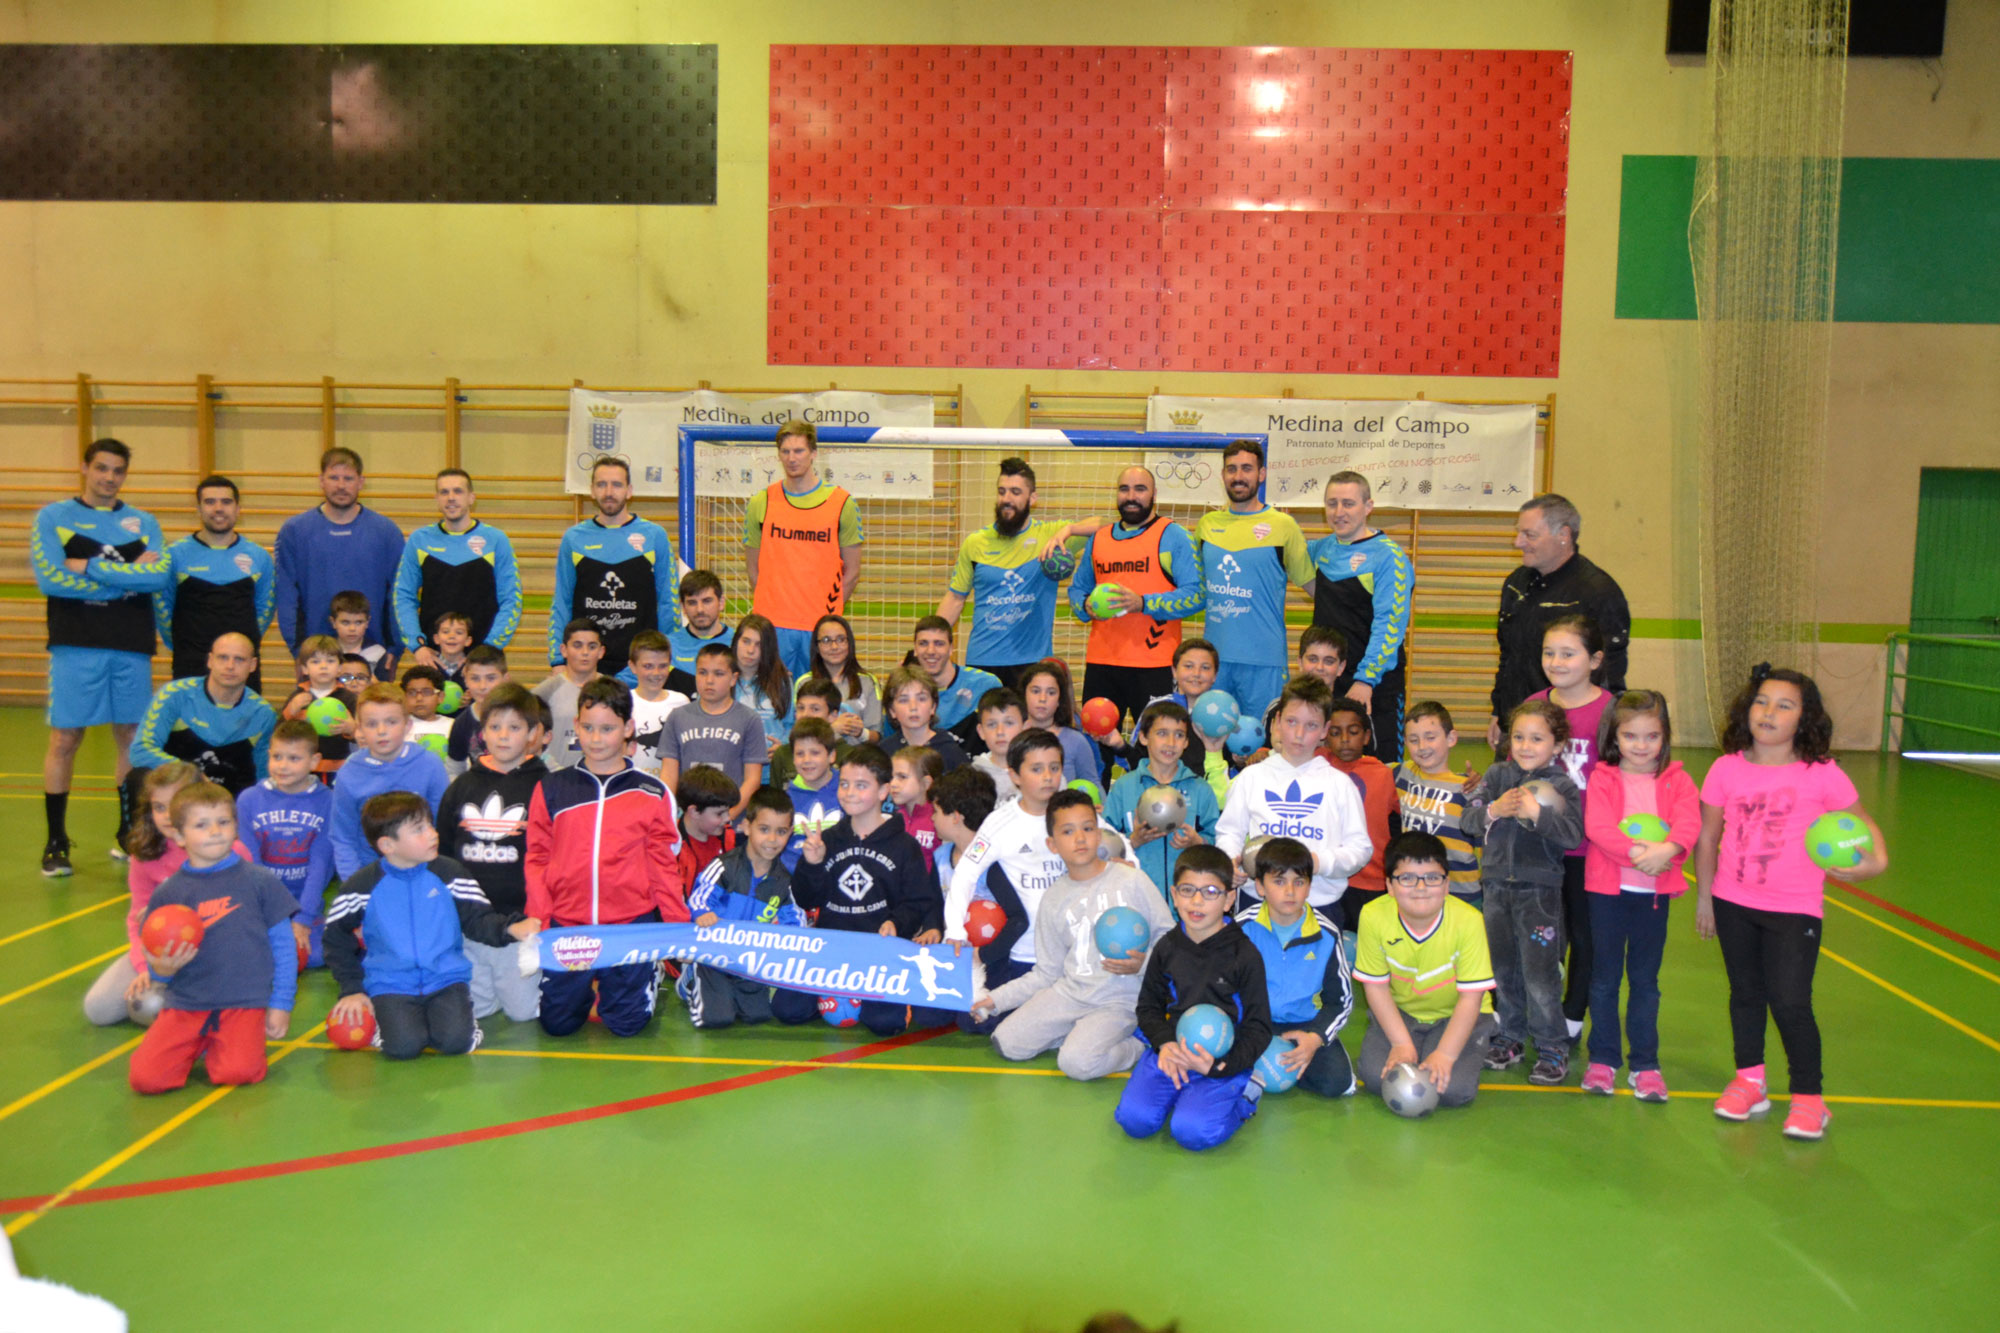 El Atlético Valladolid Recoletas acerca el balonmano a los niños de Medina del Campo | Galería 4 / 11